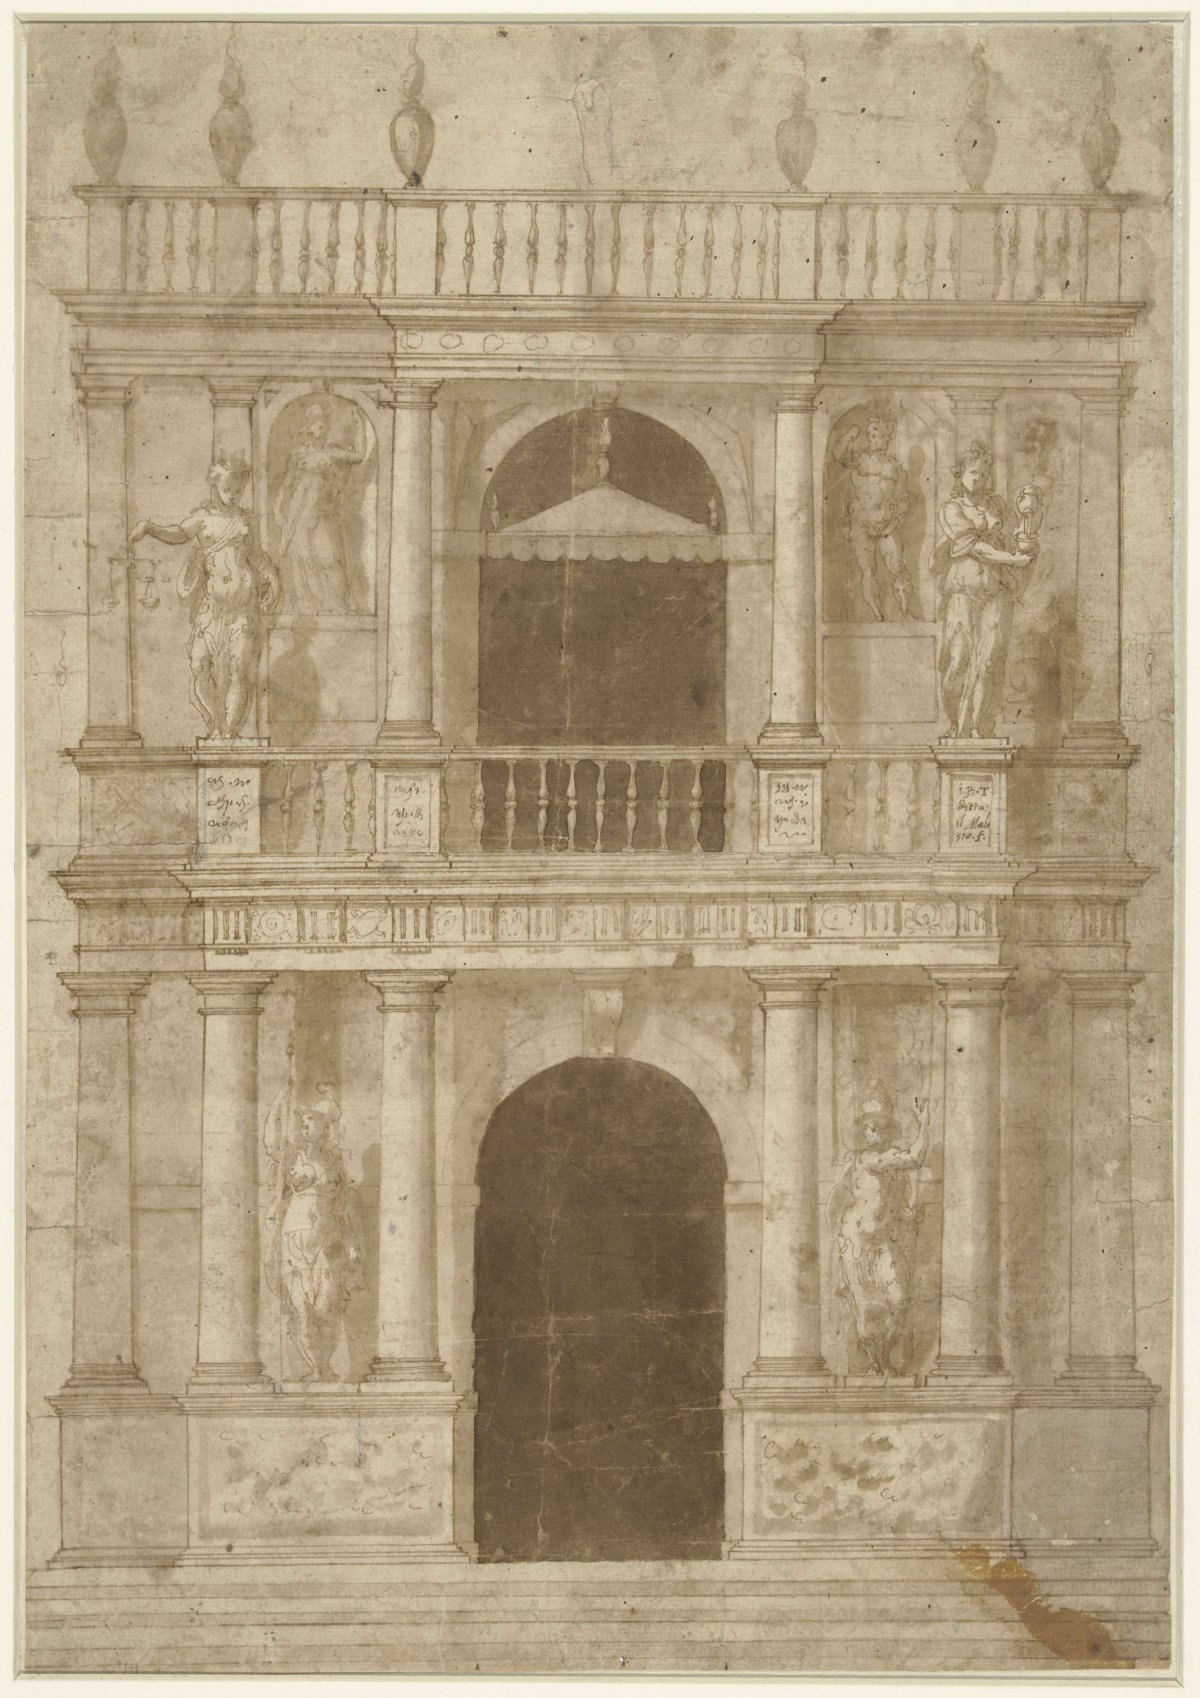 Design for a facade of a town hall, Giovanni Battista Trotti, 1565 - 1619